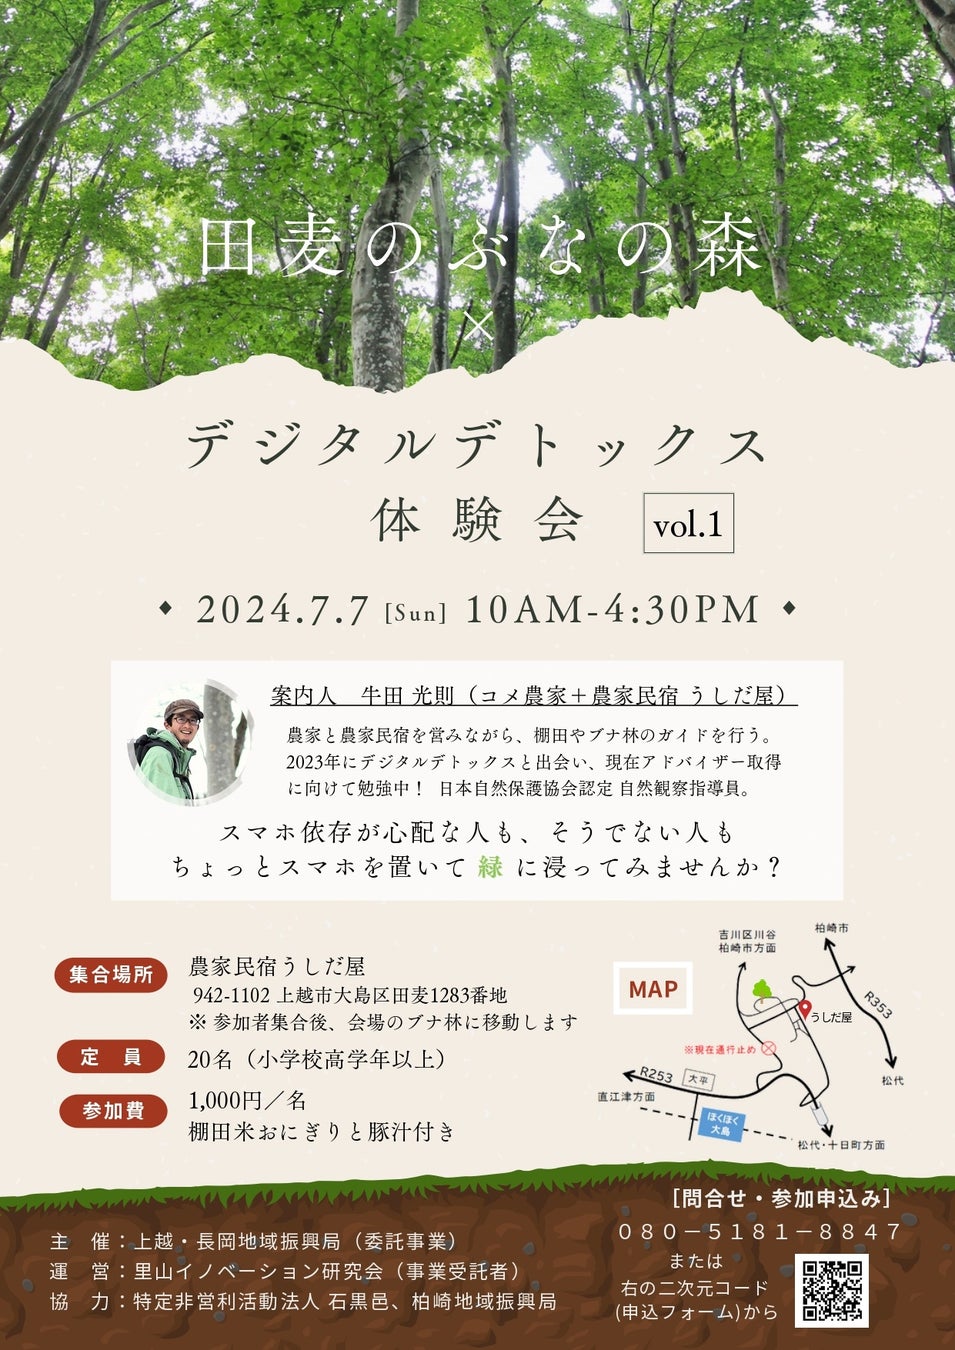 秋田ノーザンハピネッツが指定管理を行う「道の駅『岩城』アキタウミヨコ」にて、開駅感謝祭を開催いたします。